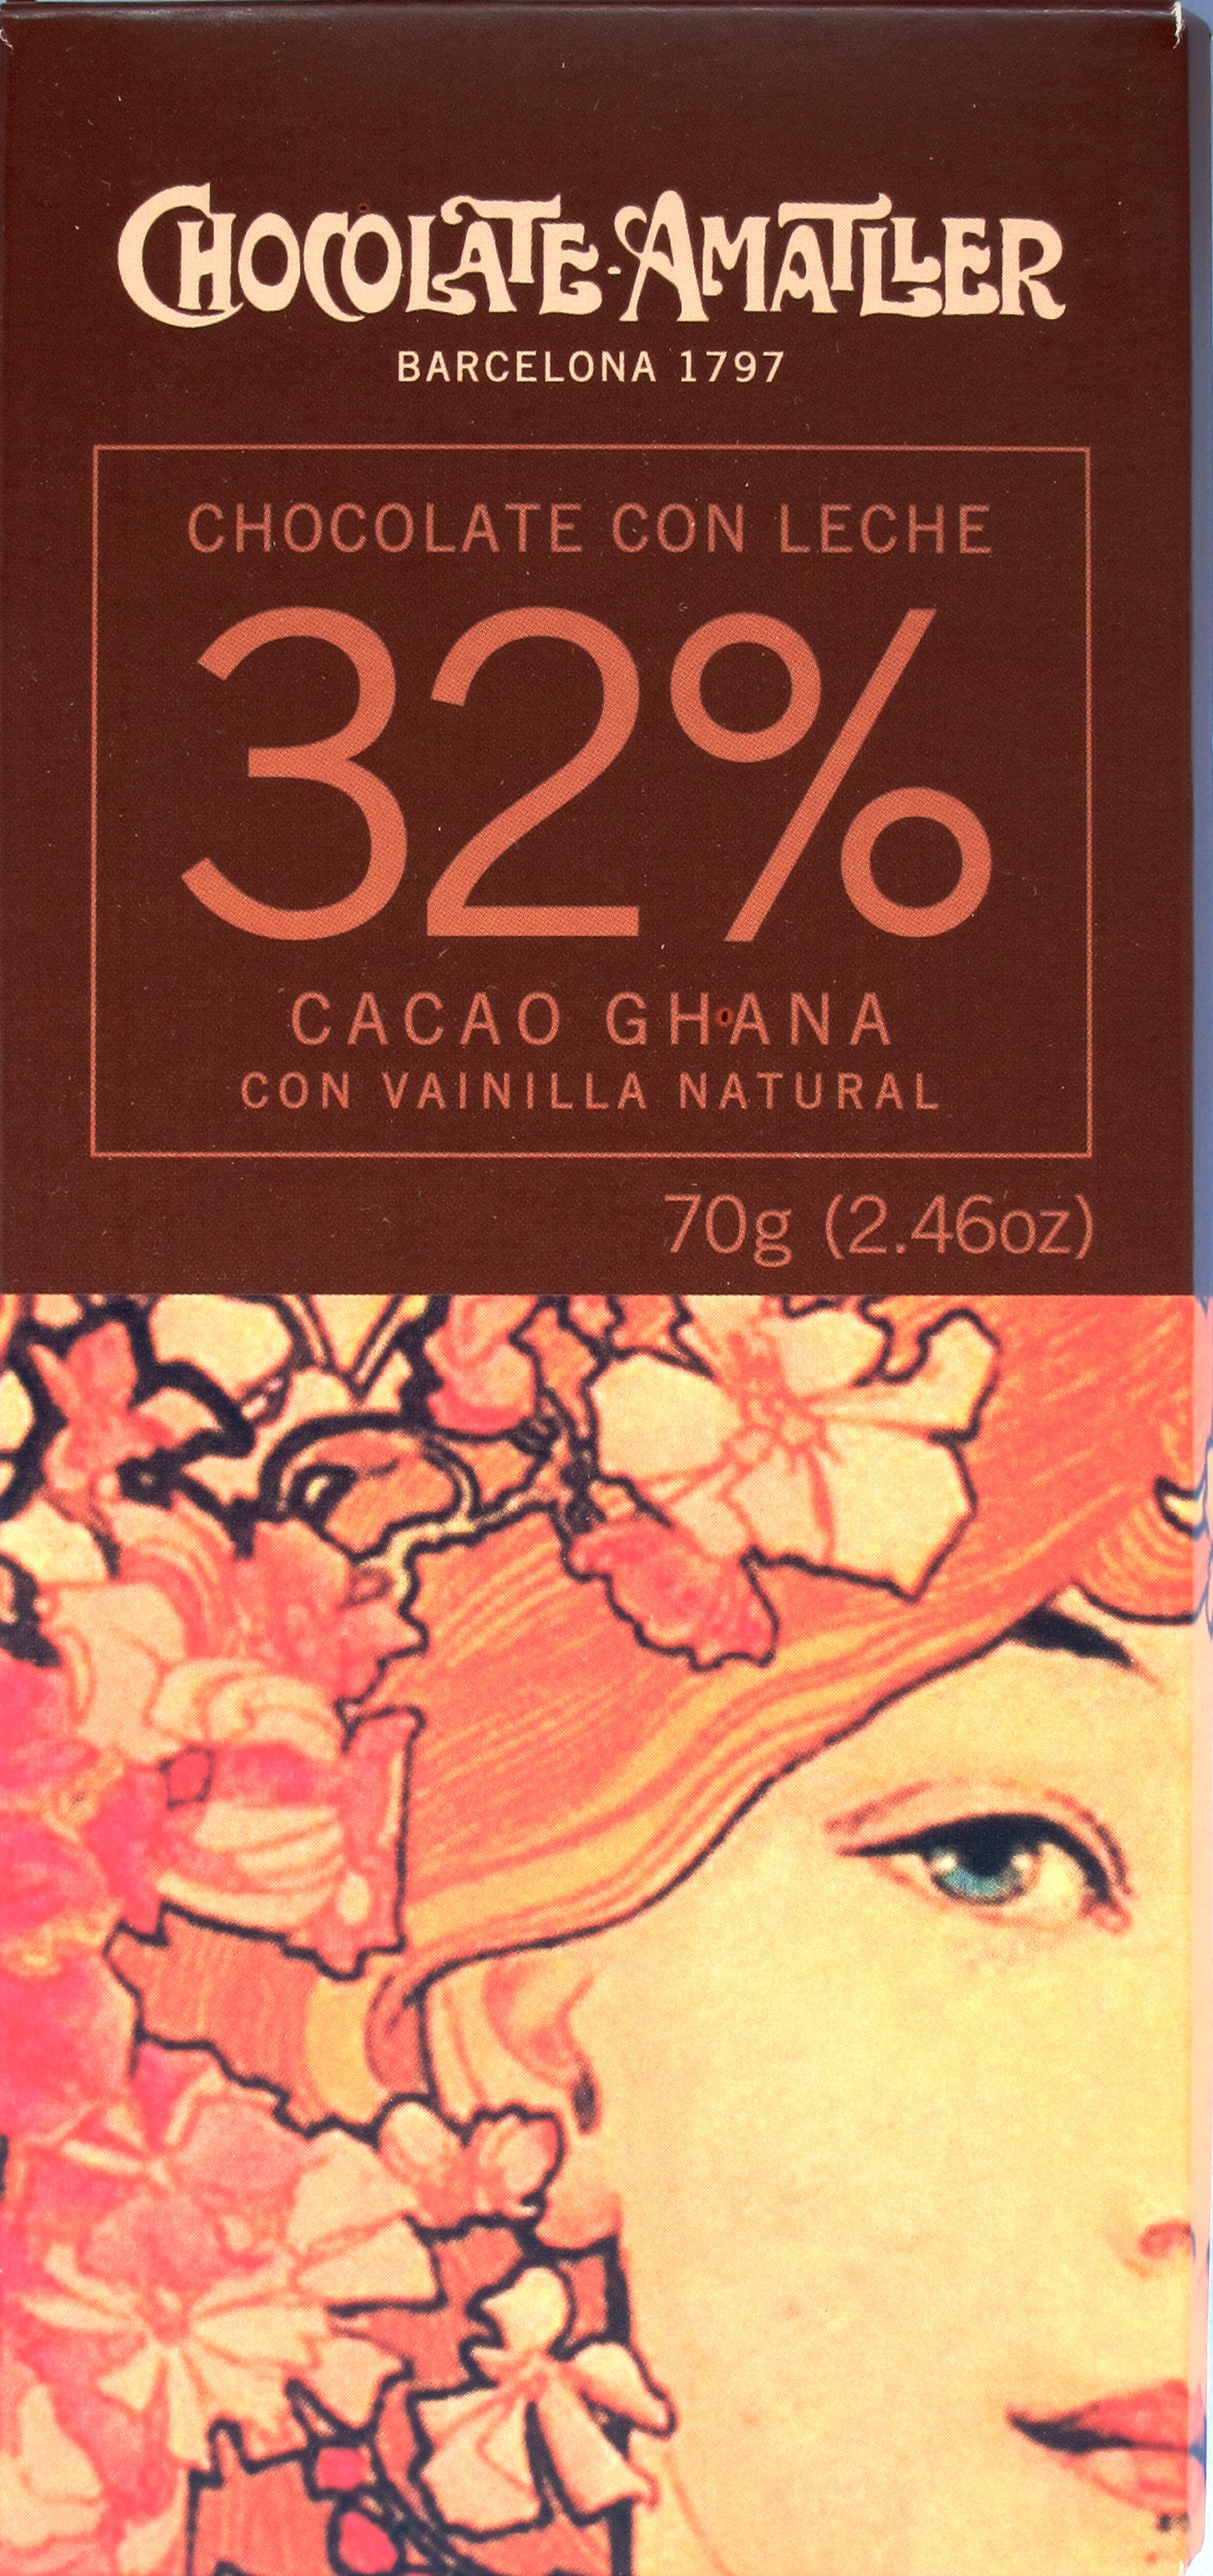 Amatller Chocolate con Leche 32% Cacao Ghana con Vainilla Natural